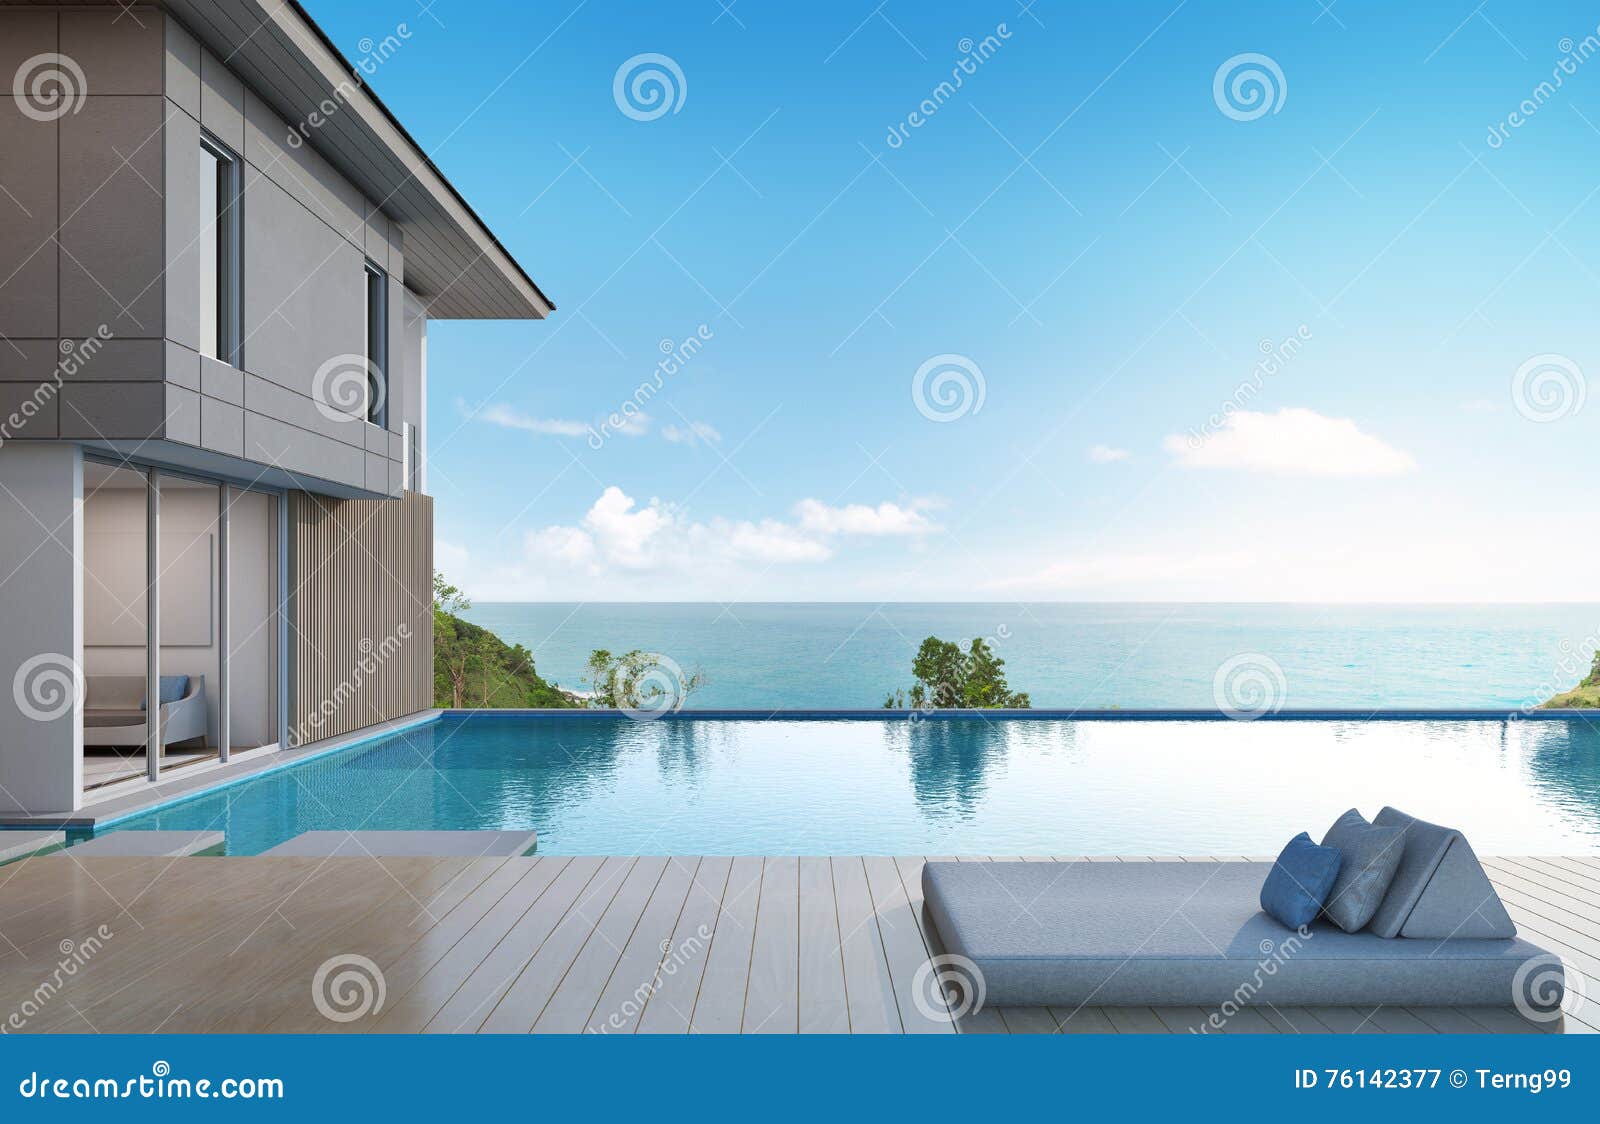 Фото домов у моря с бассейном 5 звезд чехов недвижимость